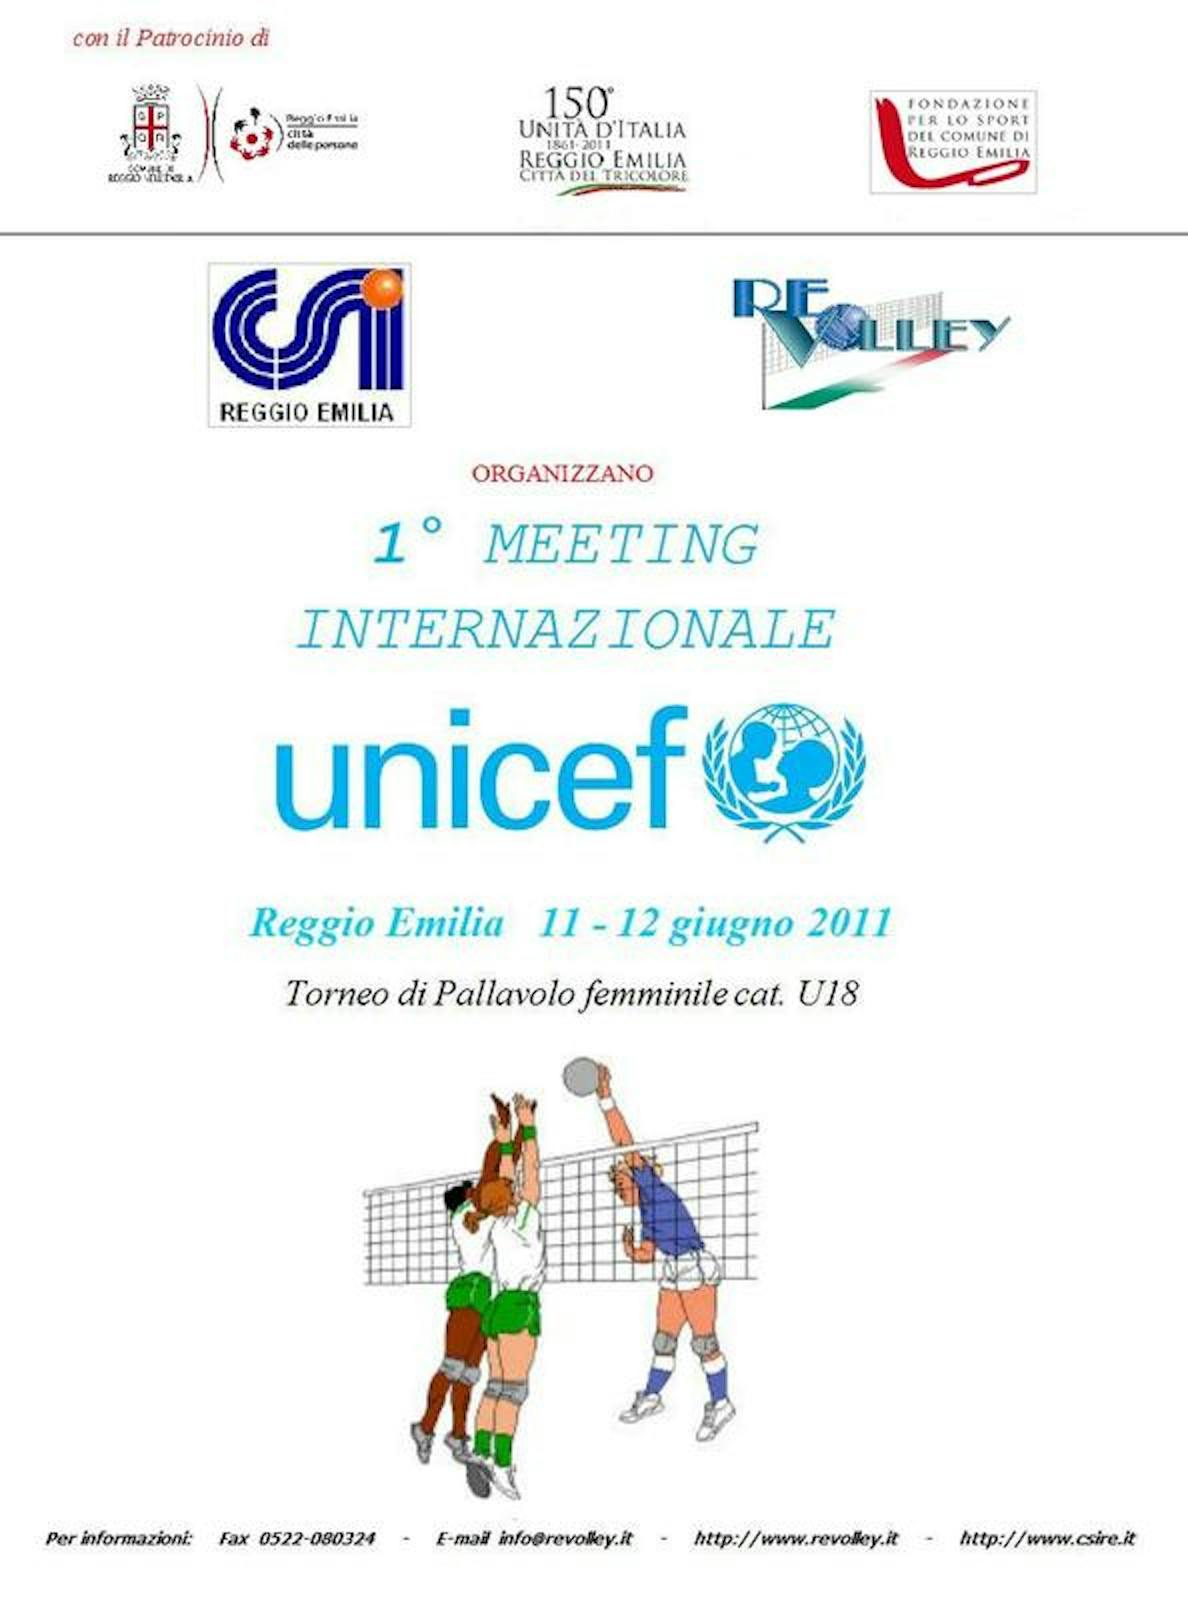 Reggio Emilia ospita il primo torneo di pallavolo femminile